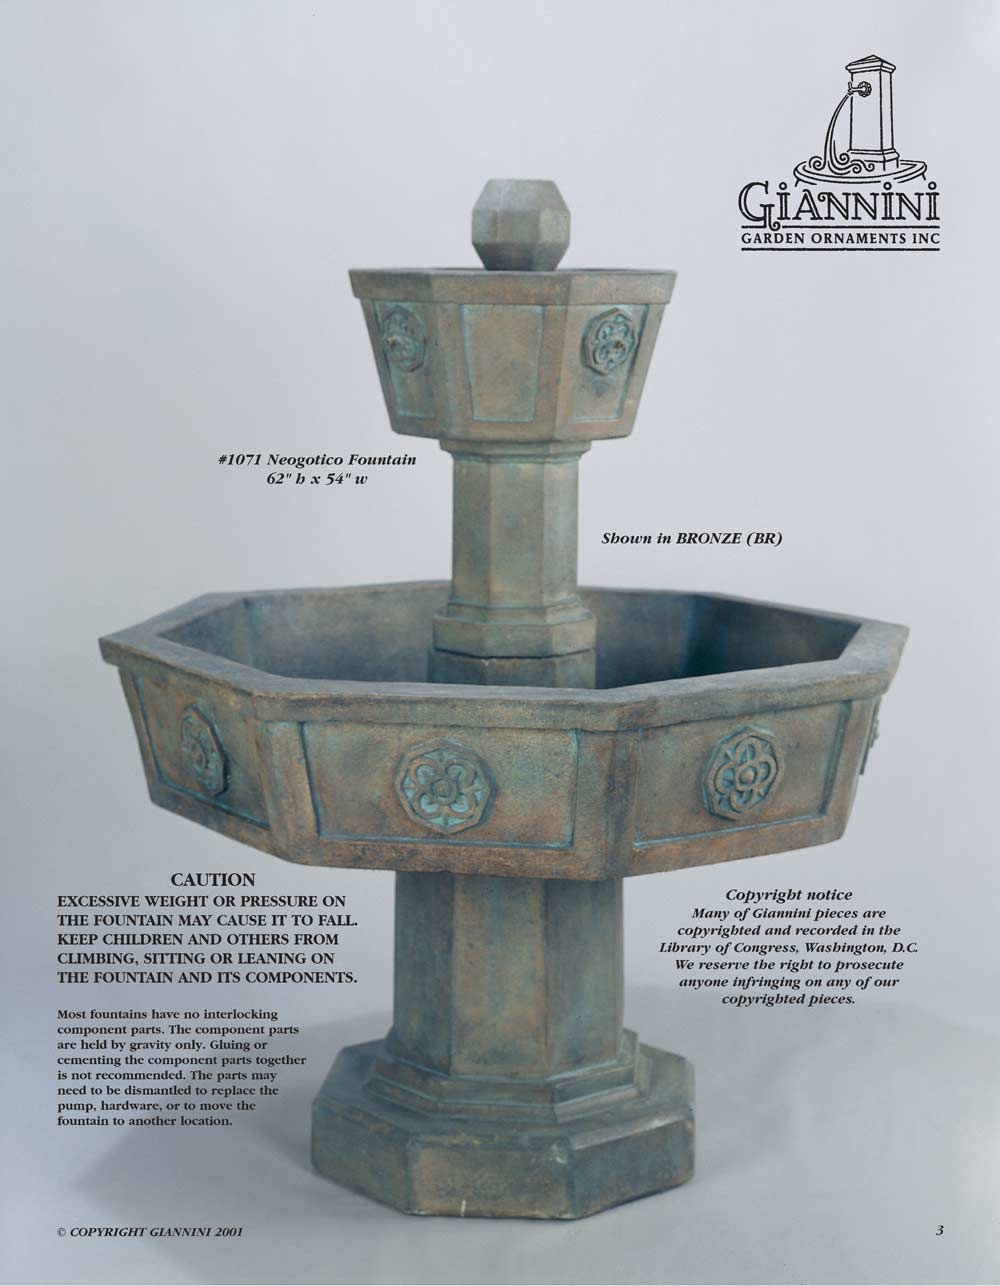 Neogotico Fountain